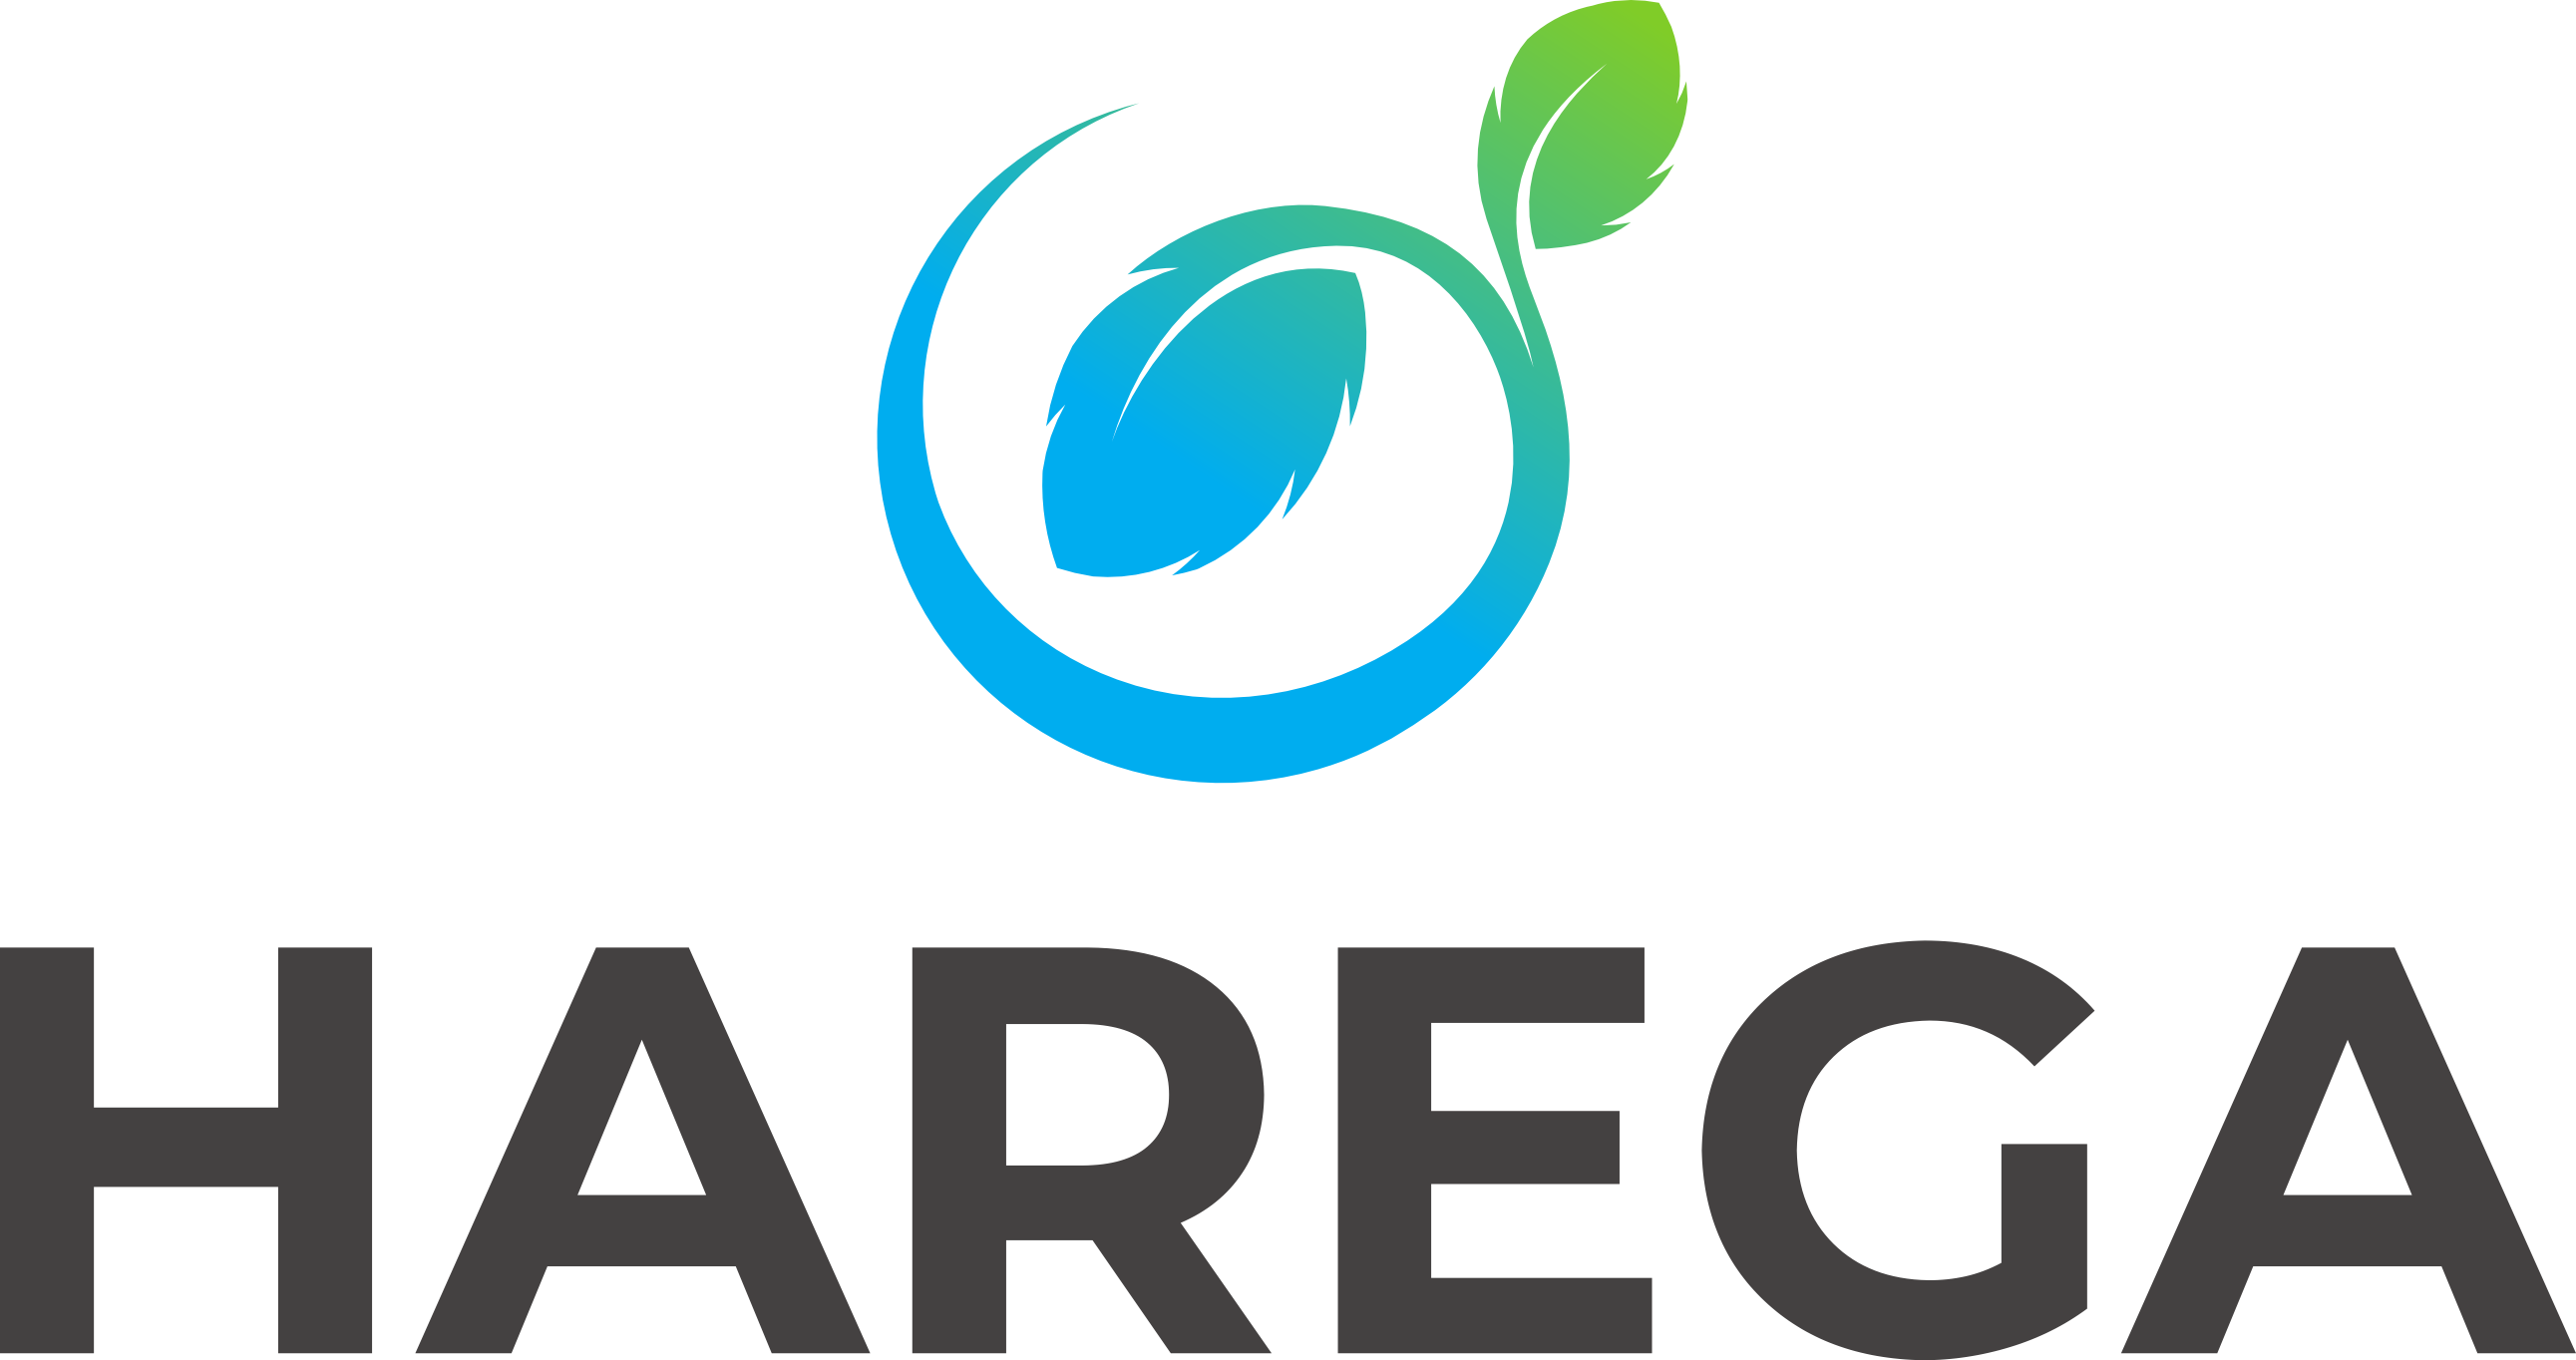 HAREGA Logo